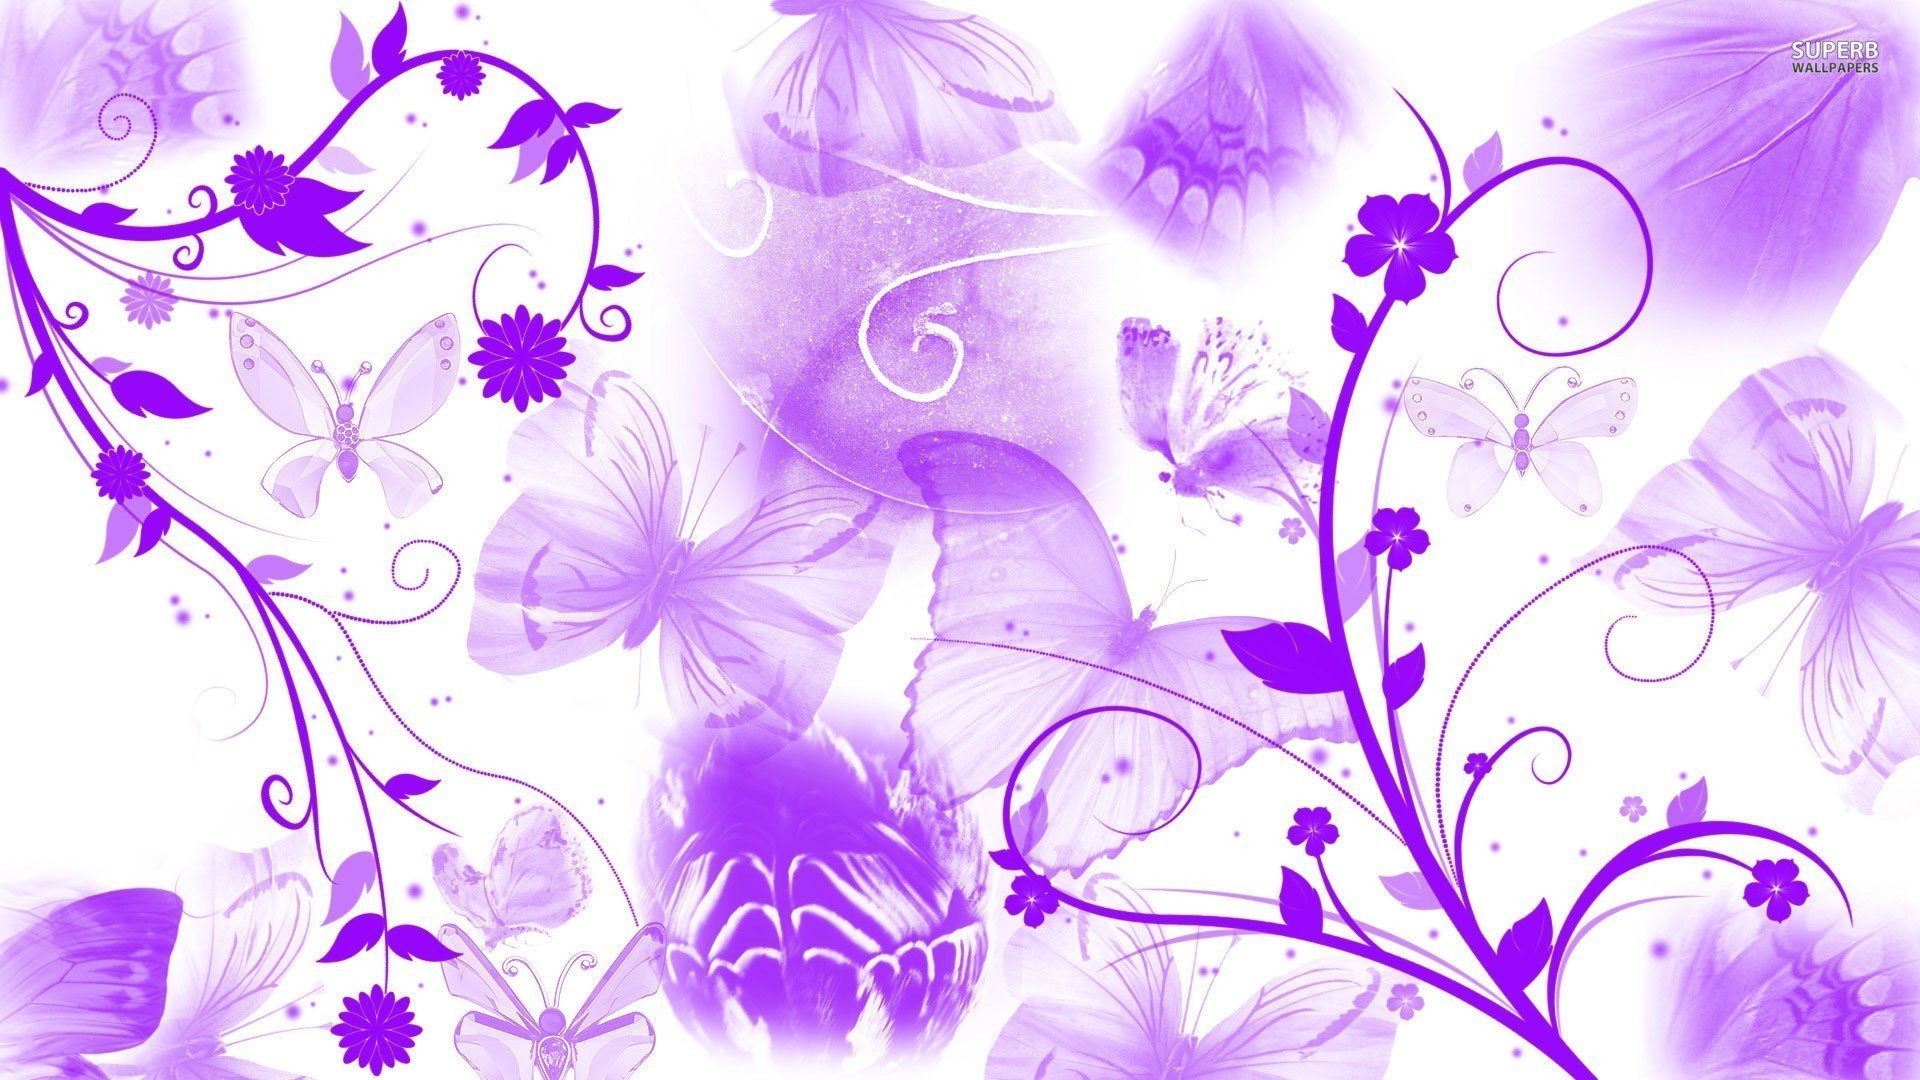 1920x1080 Purple butterflies and swirling flowers wallpaper